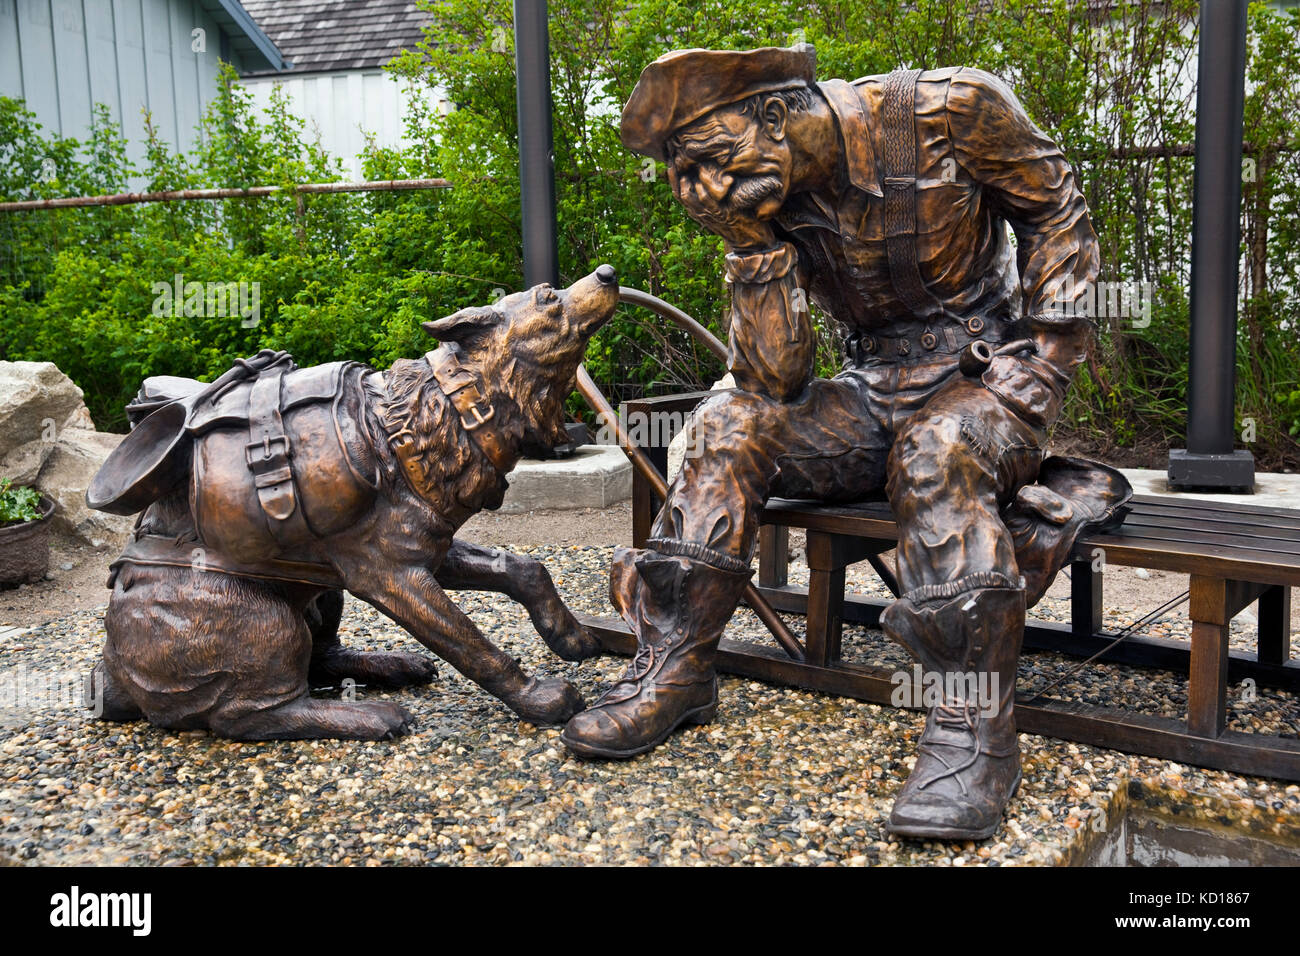 L'homme et le chien de bronze faisant partie d'une installation extérieure intitulée "tonne de marchandises", commémorant la ruée vers l'or. Artiste : Peter Lucchetti, Klondike Gold Rush National Historical Park, Skagway, Alaska, États-Unis d'Amérique Banque D'Images